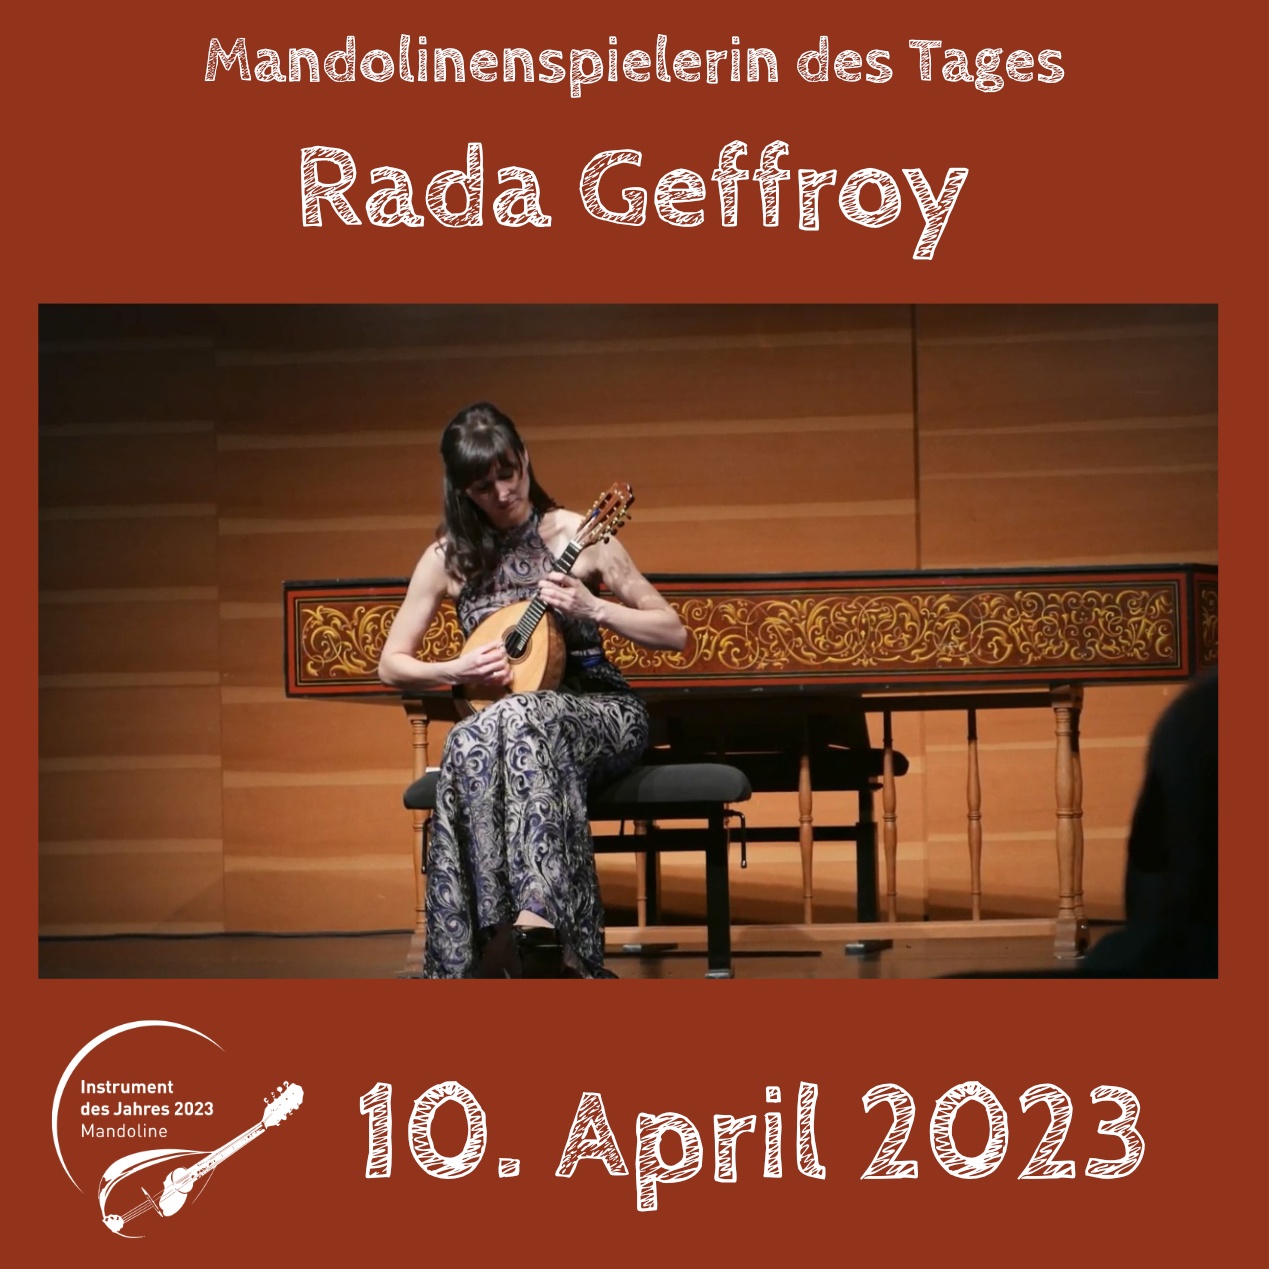 Rada Geffroy Instrument des Jahres 2023 Mandolinenspieler Mandolinenspielerin des Tages